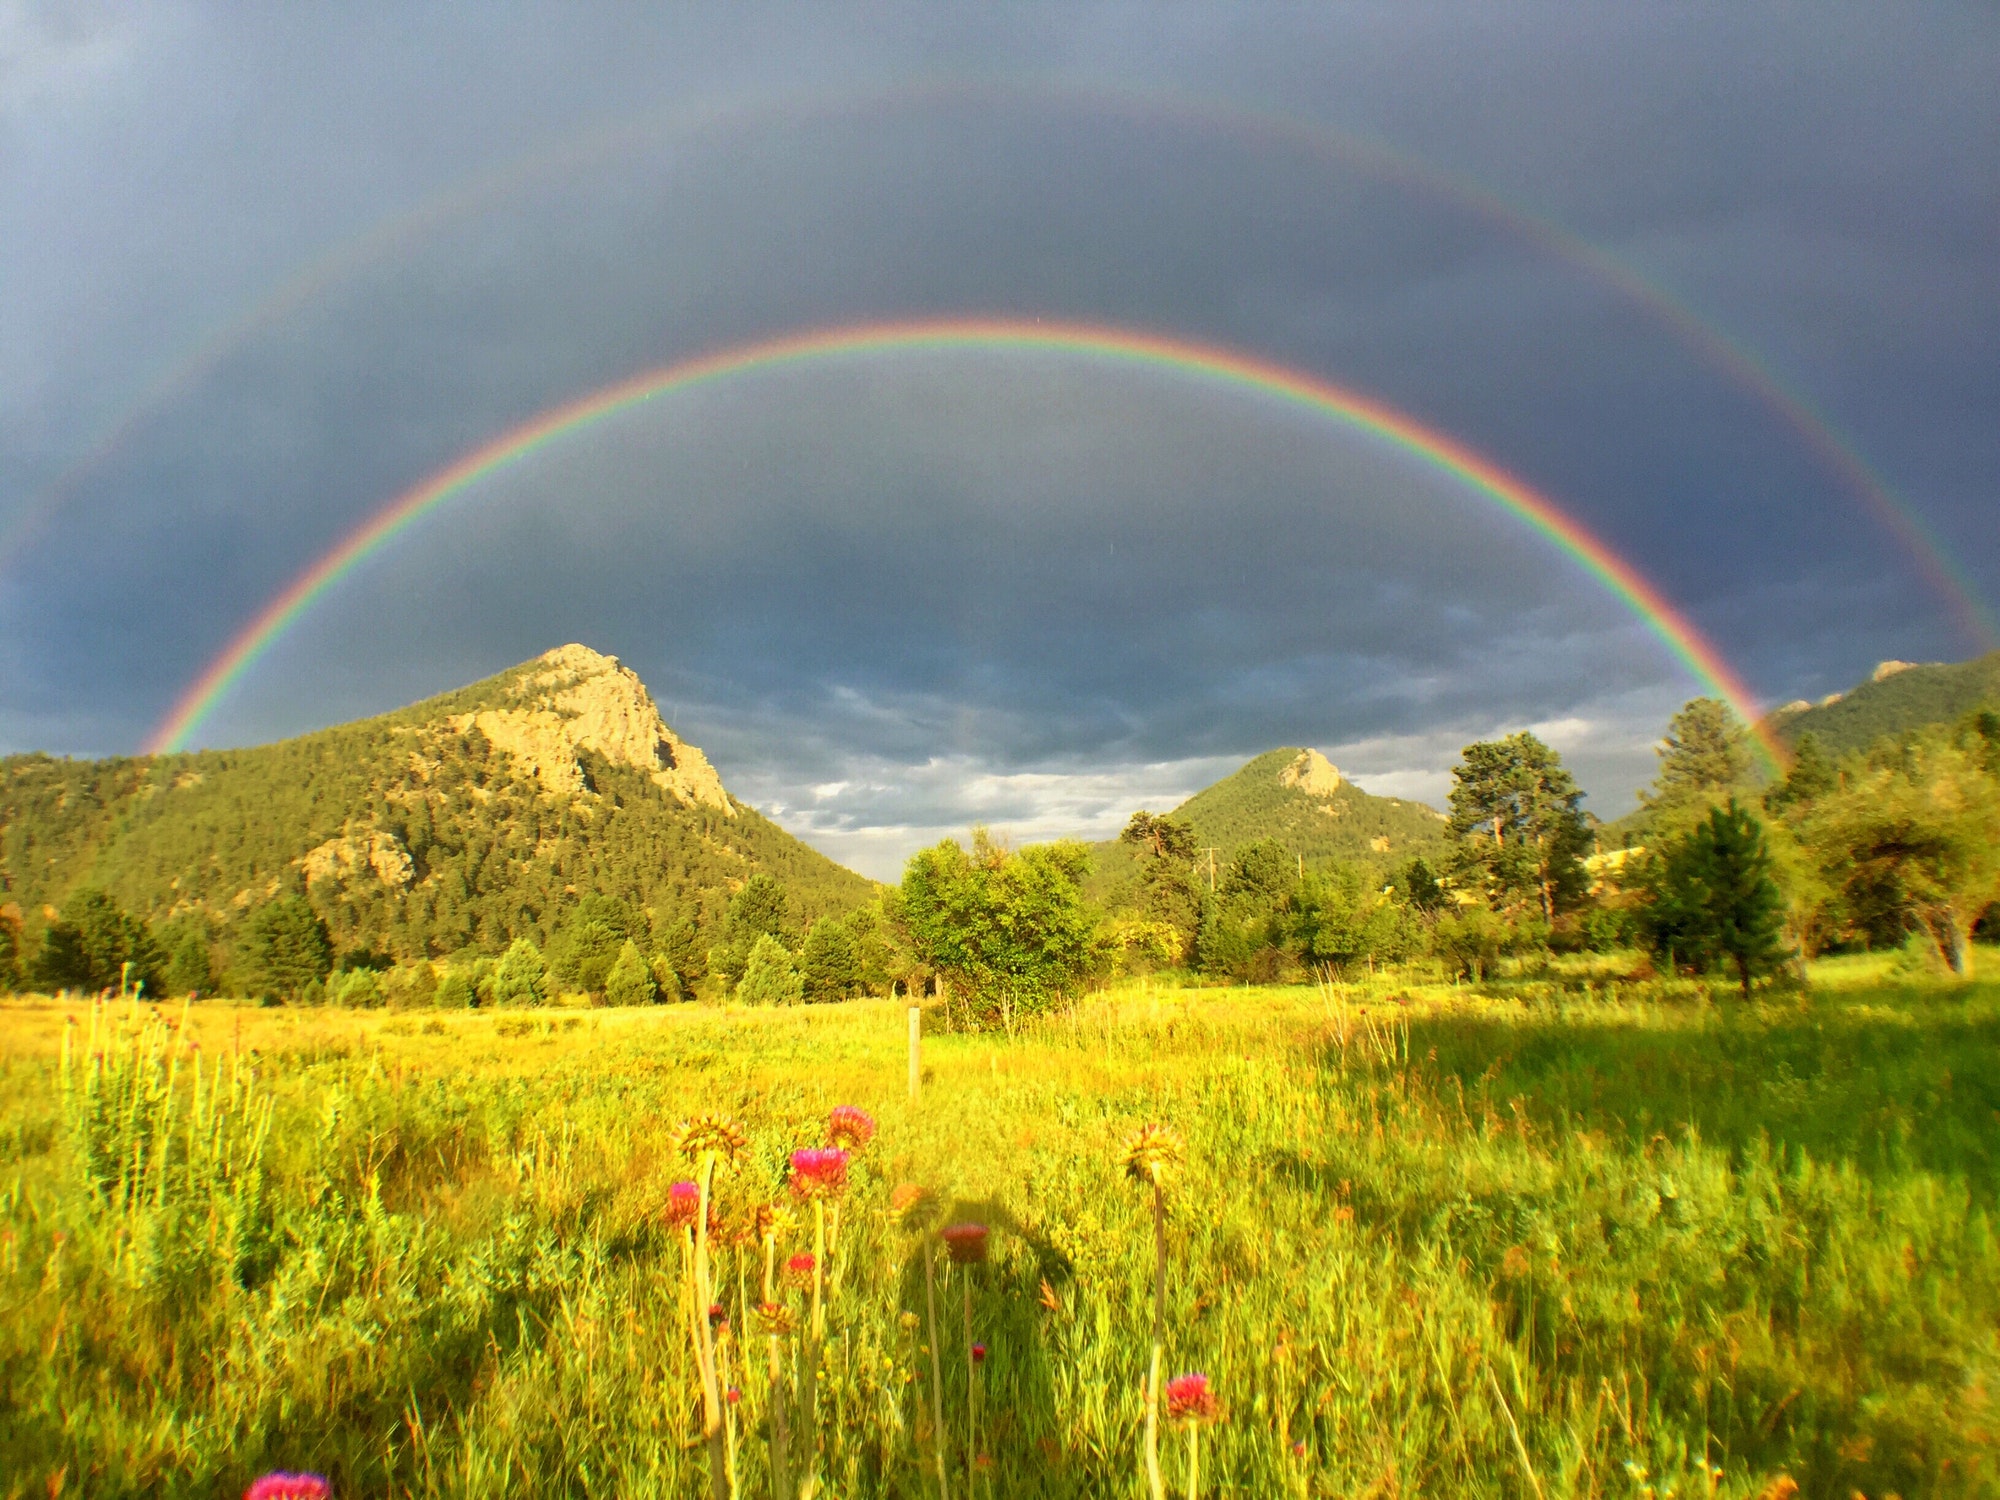 Sunlight, summer field, mountain, and double rainbow